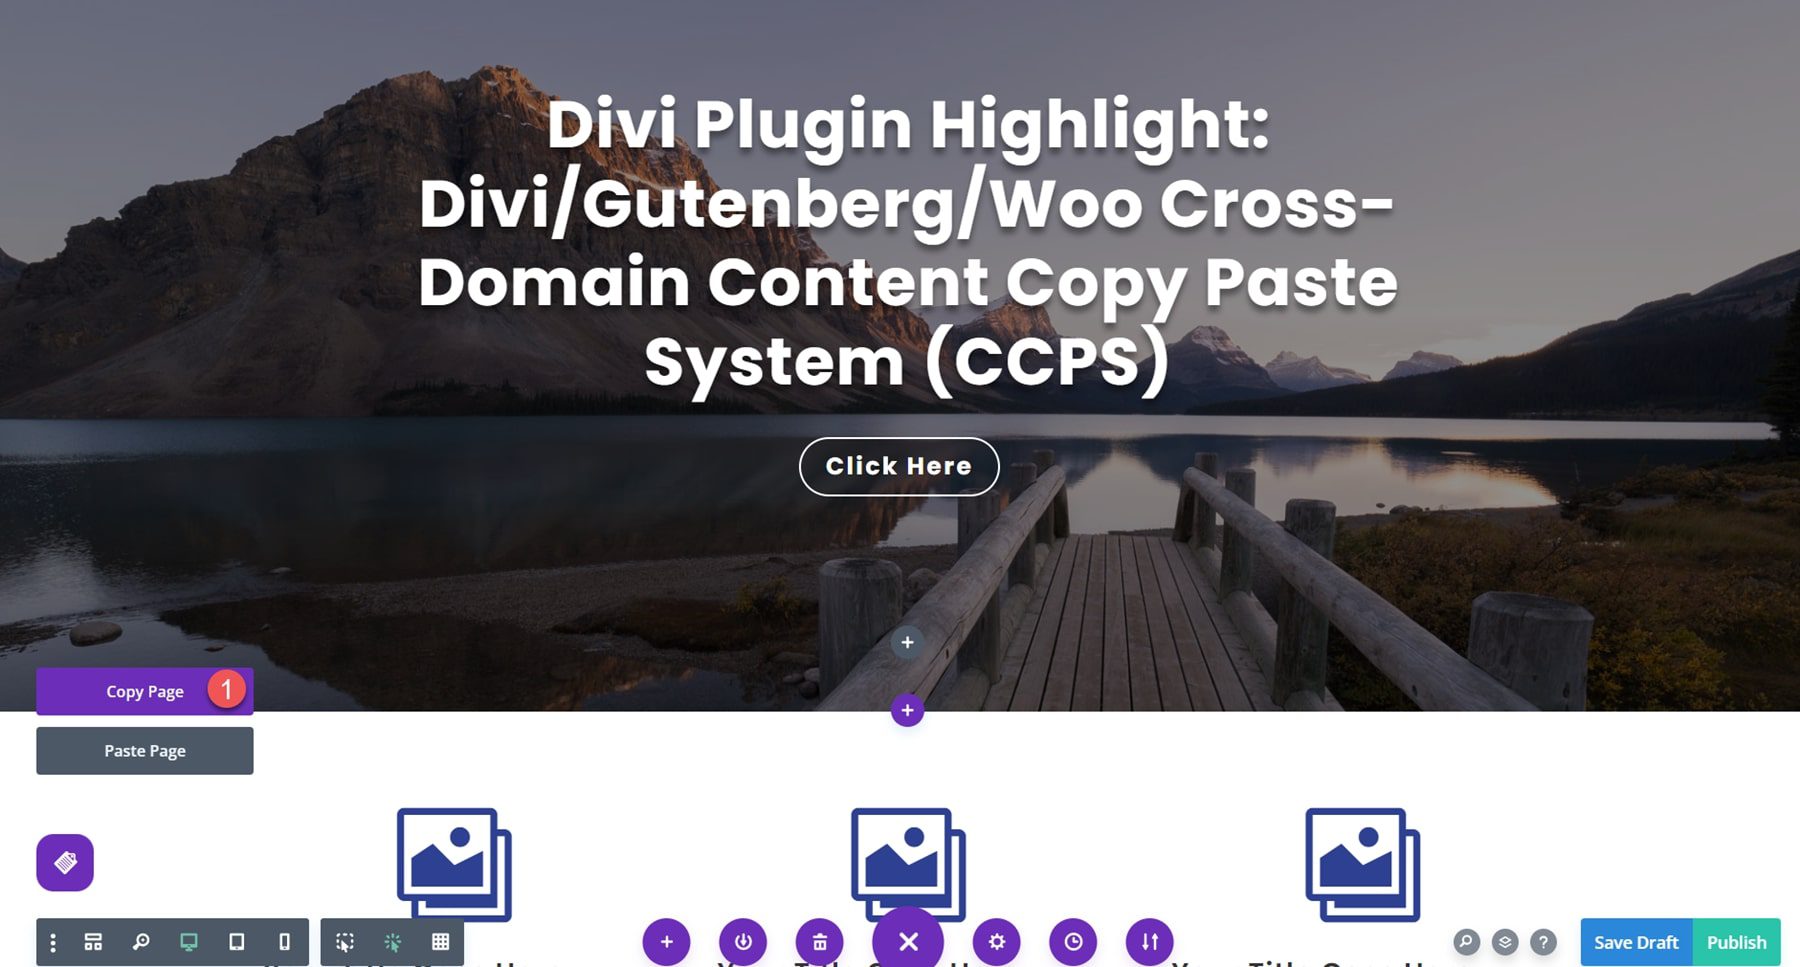 Divi 플러그인 하이라이트 Divi/Gutenberg/Woo CCPS(Cross-Domain Content Copy Paste System) Visual Builder Copy